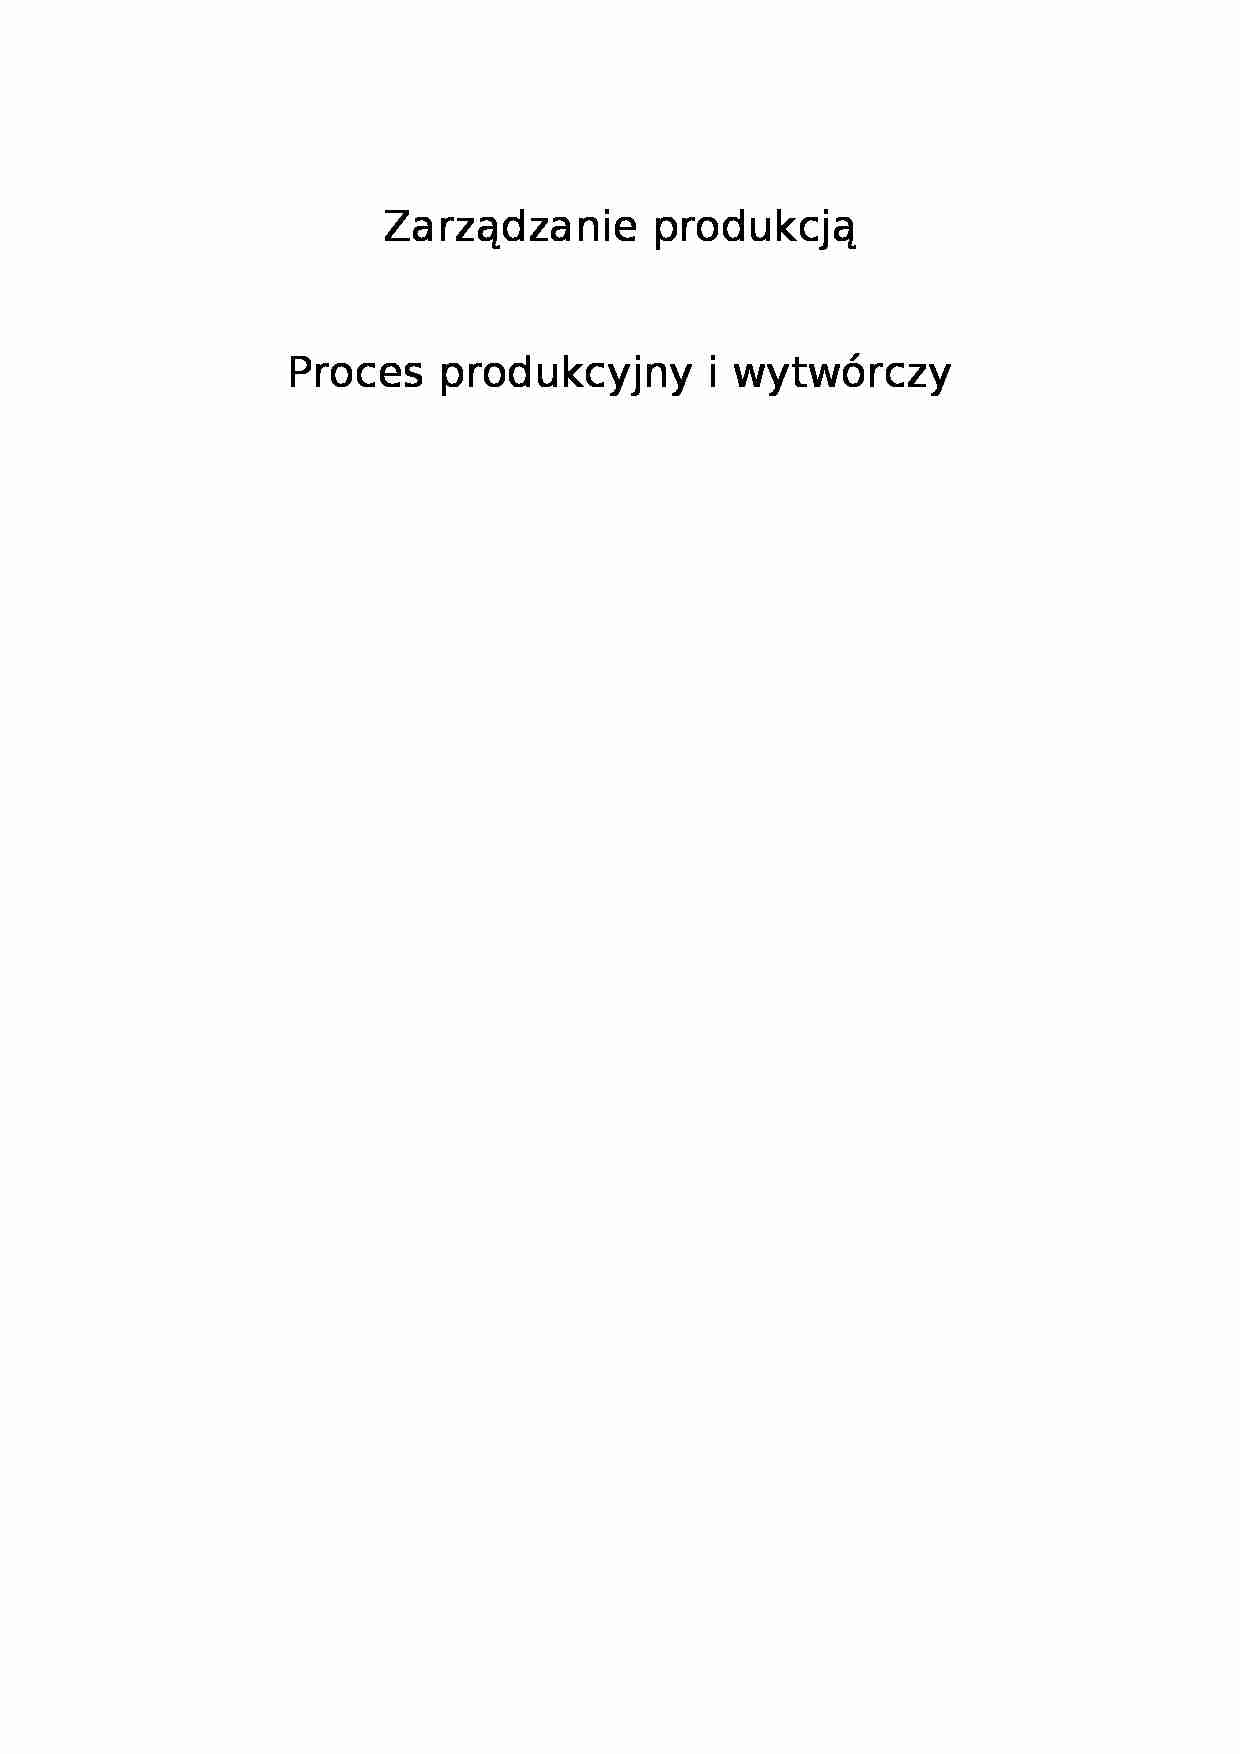 Proces produkcyjny i wytwórczy - schemat - strona 1